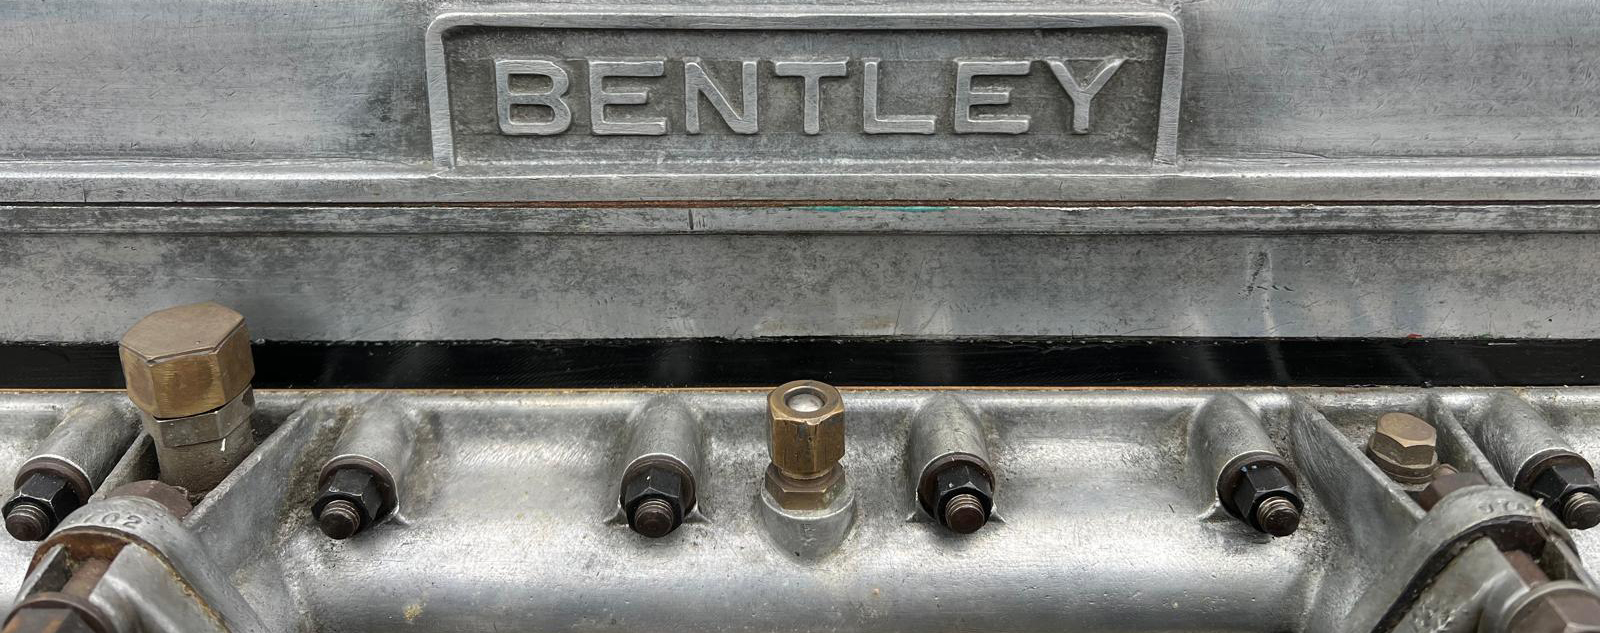 1929 Bentley 4.5 Litre Bentley Engine